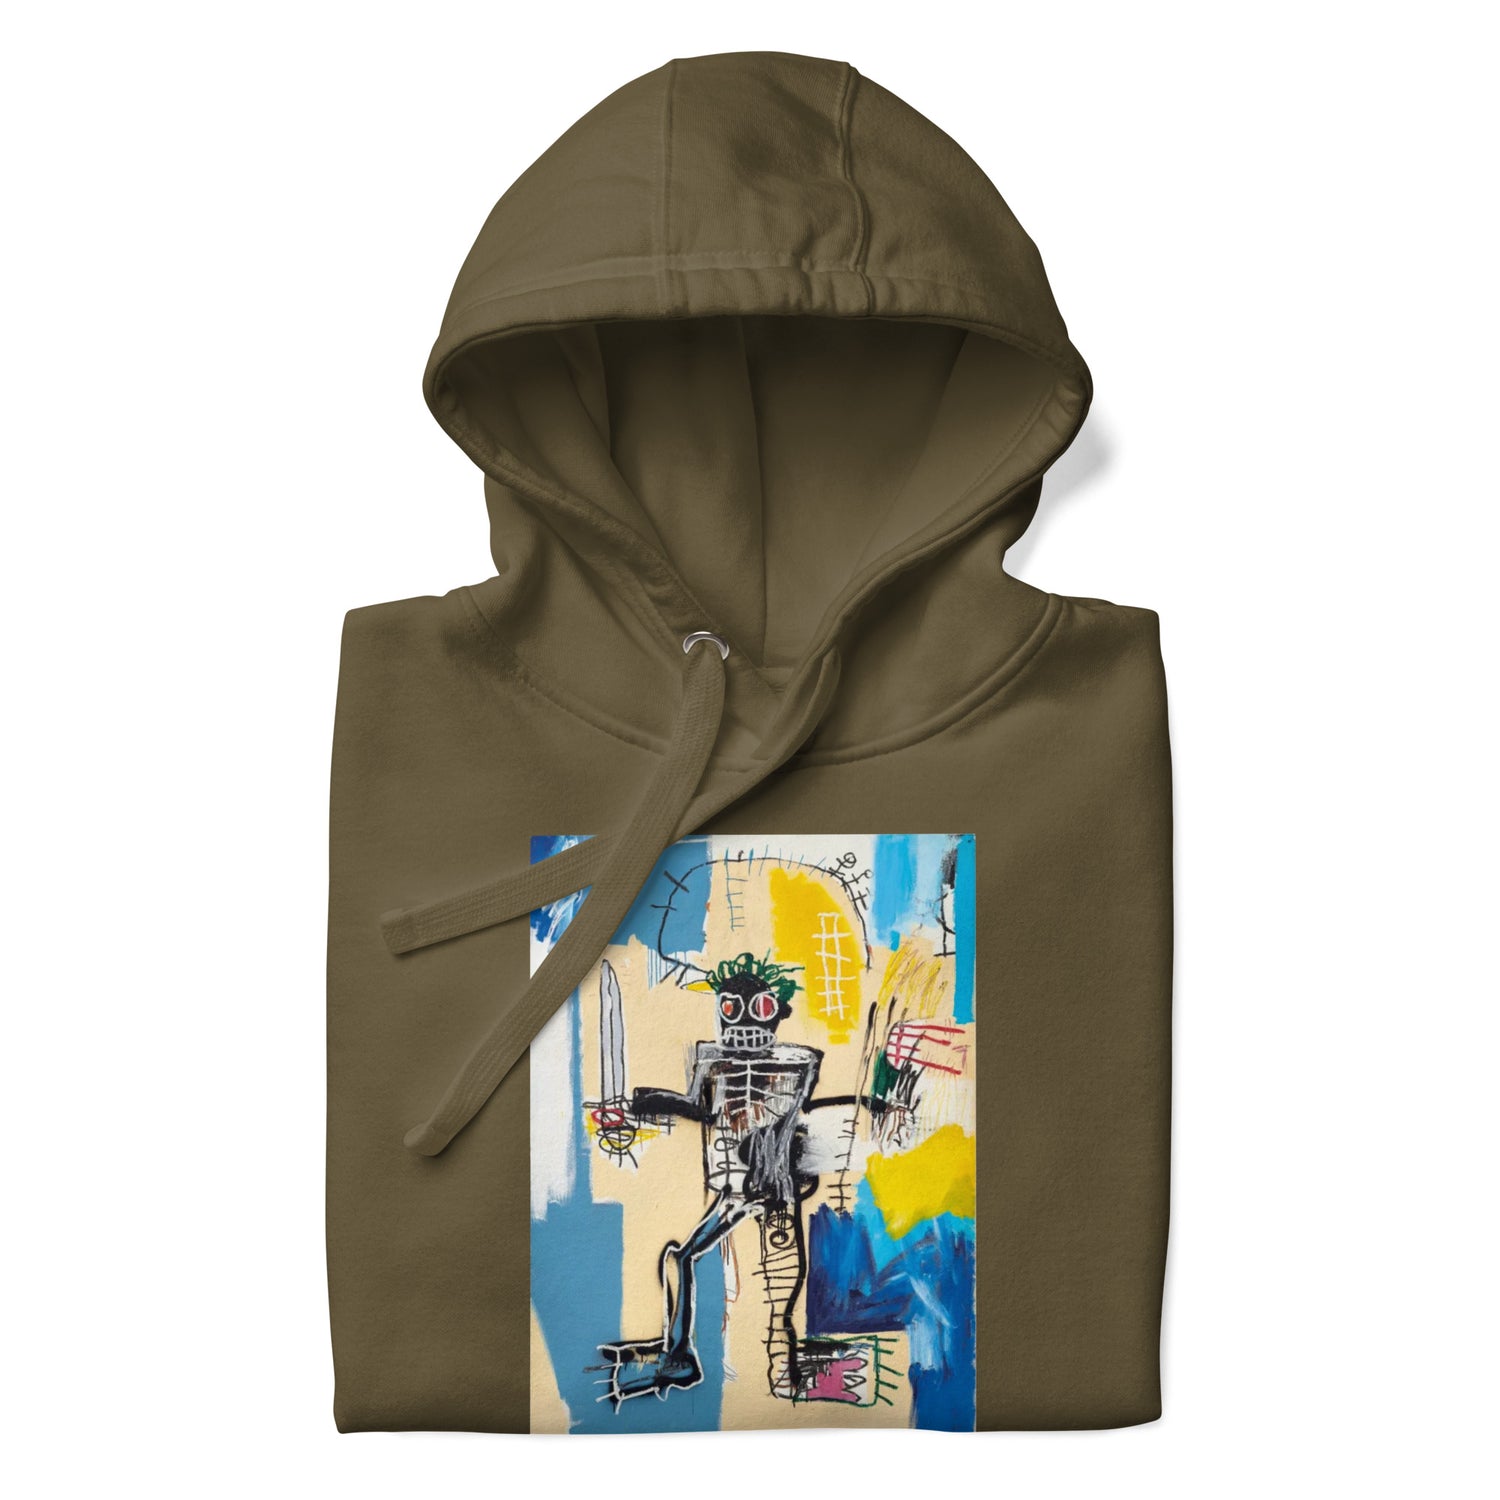 Jean-Michel Basquiat "Warrior" Artwork Printed Premium Streetwear Sweatshirt Hoodie Olive Green